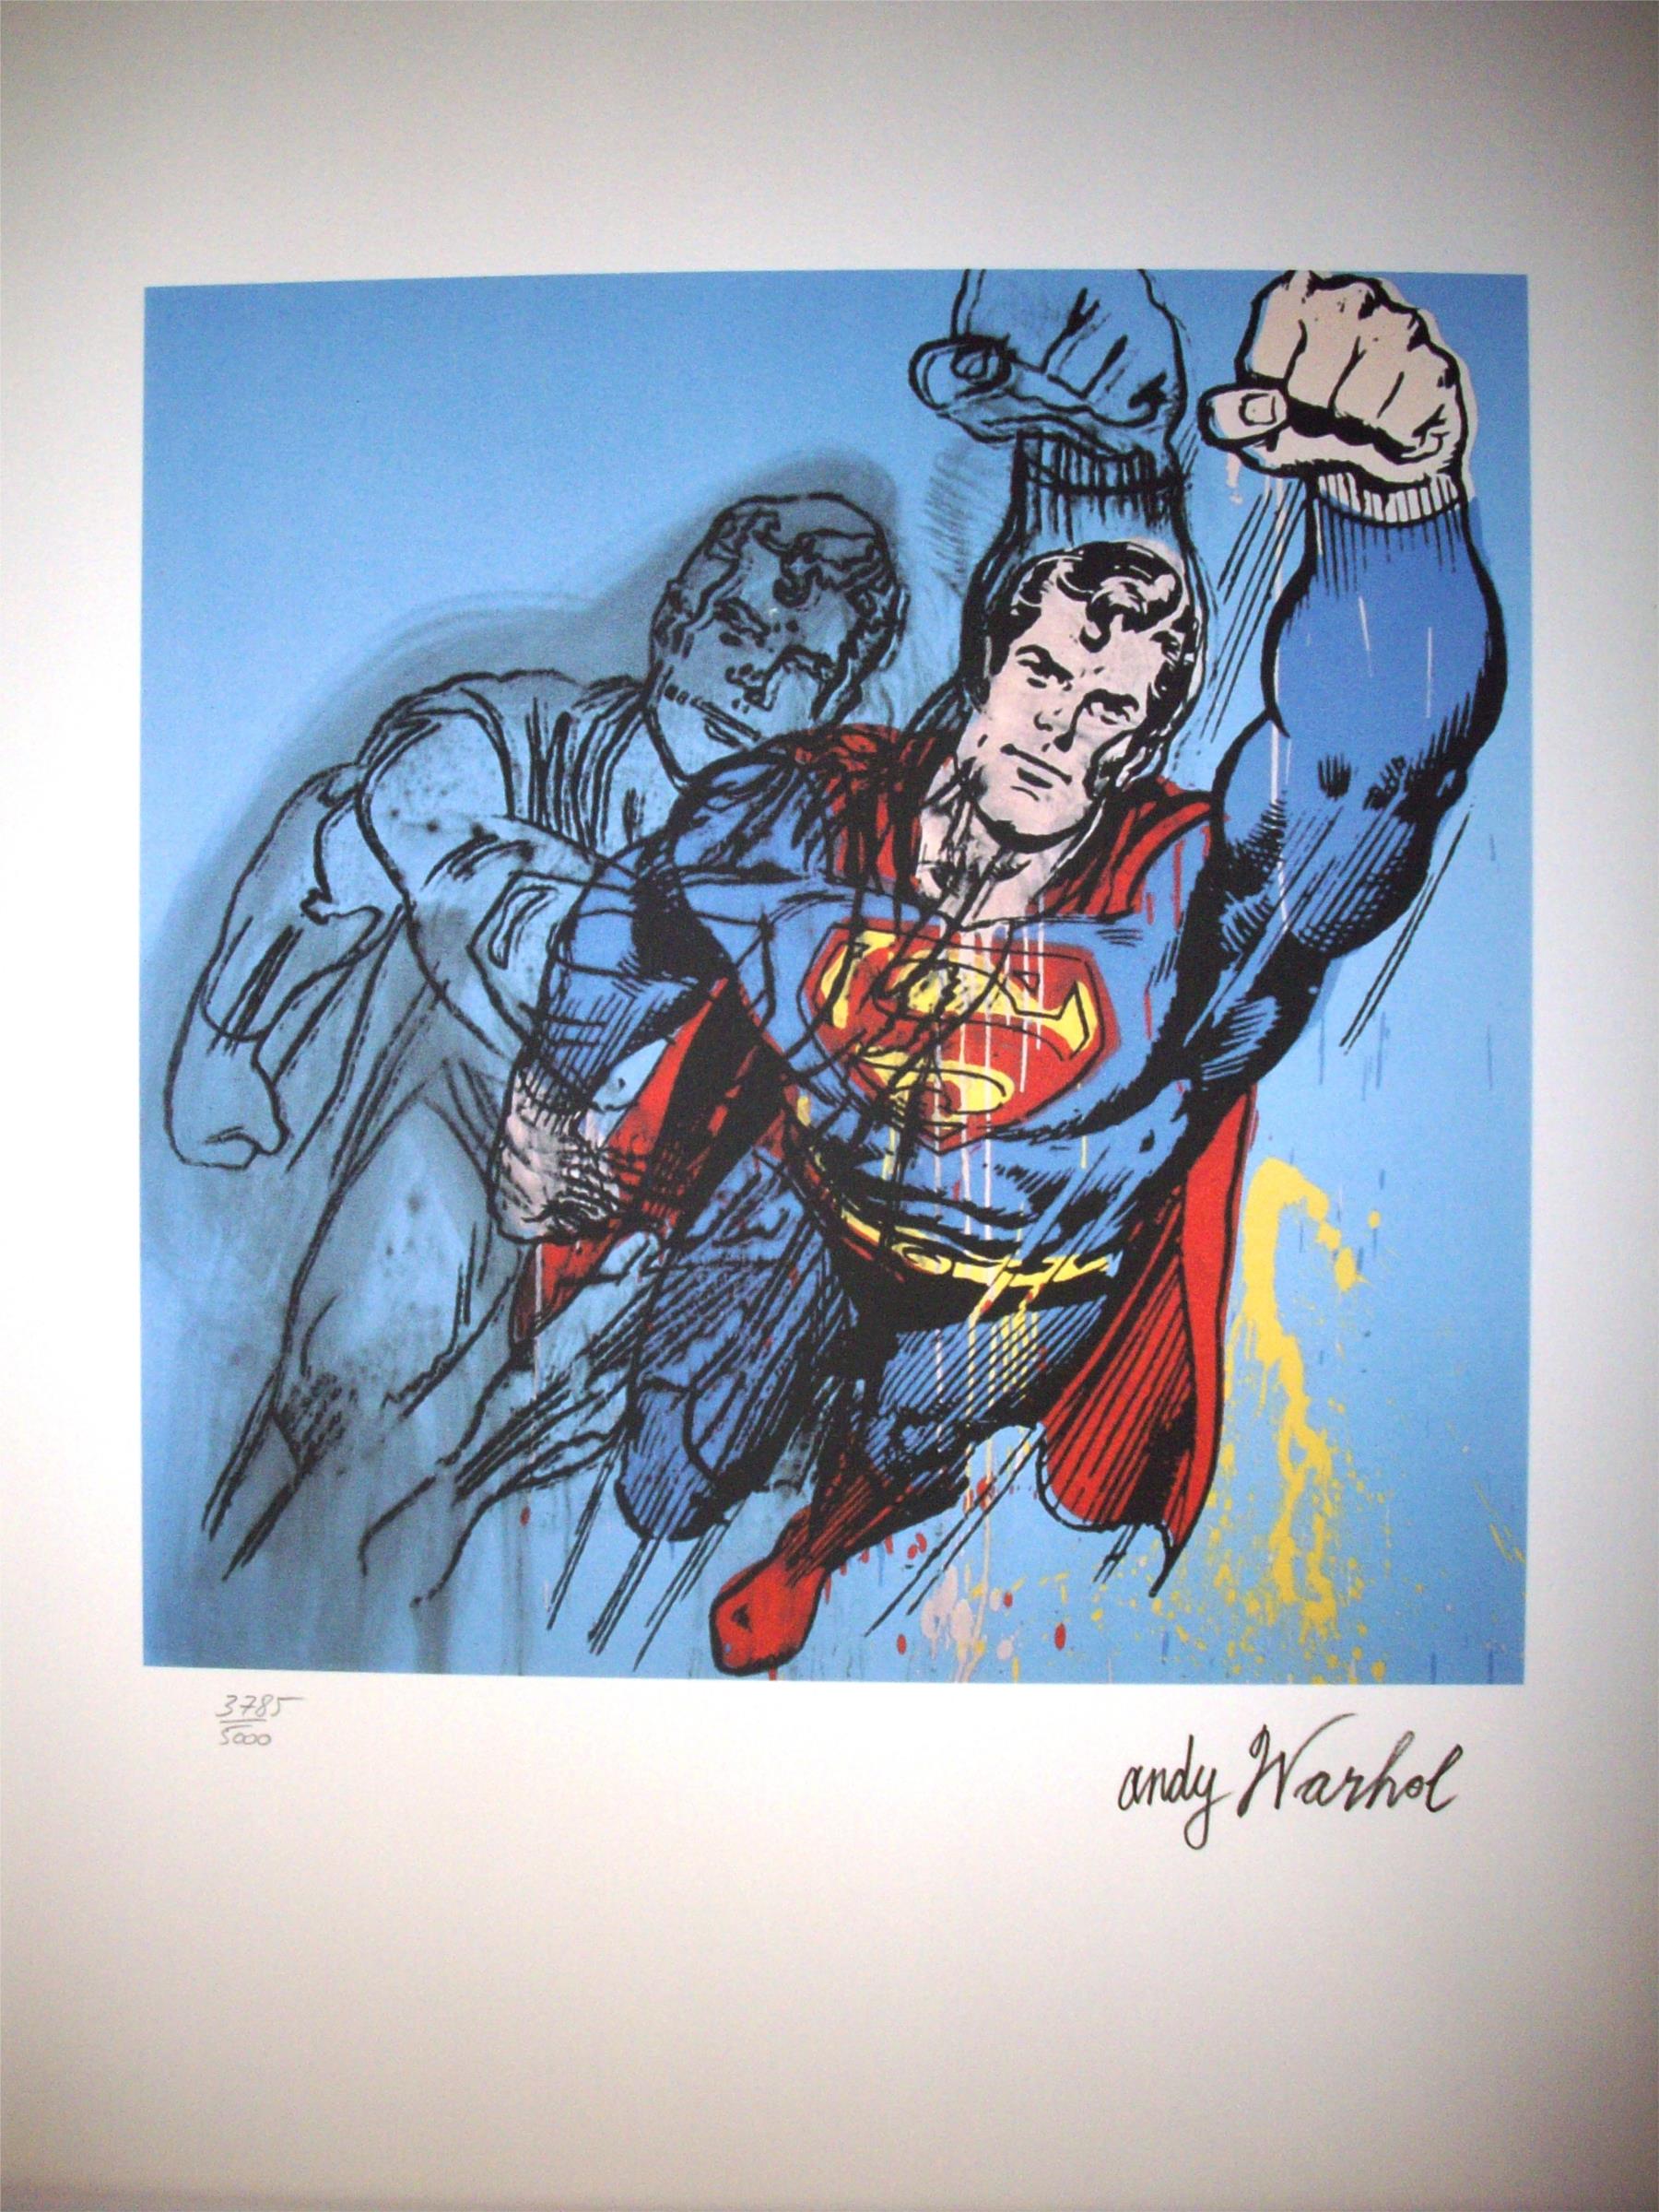 Andy Warhol: "Superman" 3785/5000 - Subasta Real · Subastas de ...